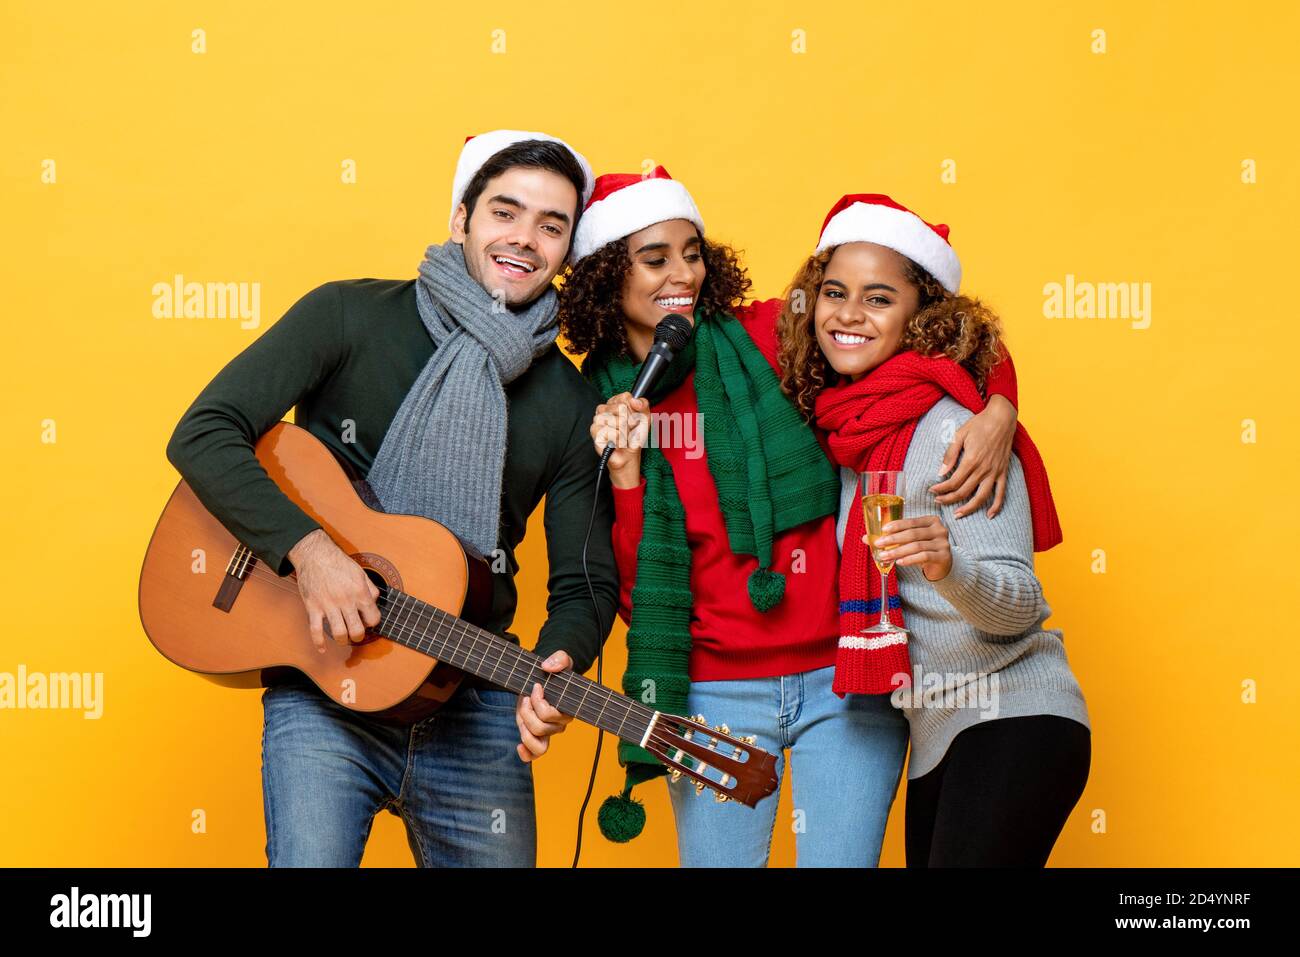 Glückliche drei verschiedene Freunde, die Party singen und Weihnachten feiern Im gelben Studio-Hintergrund Stockfoto